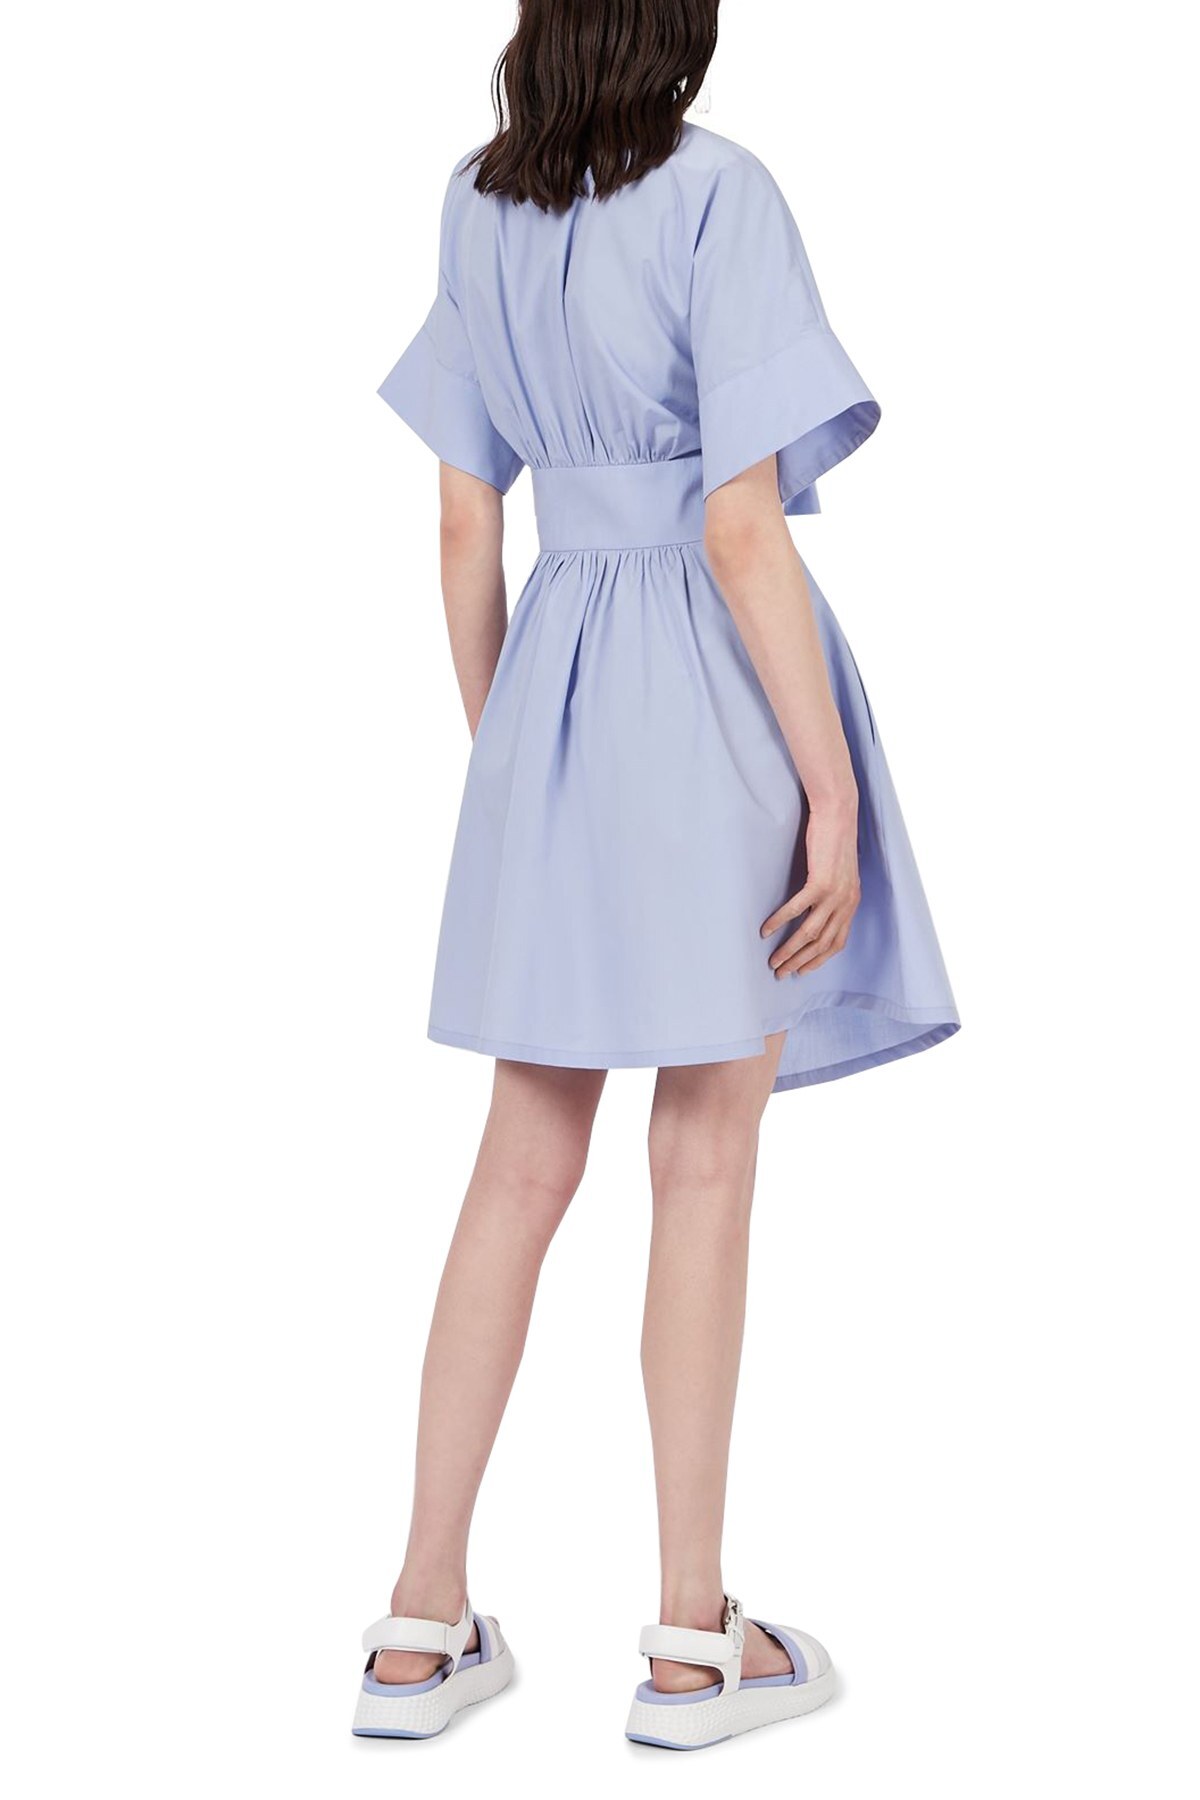 Emporio Armani Belden Bağlamalı % 100 Pamuk Mini Gömlek Bayan Elbise 3K2AA3 2N0FZ 0809 AÇIK MAVİ